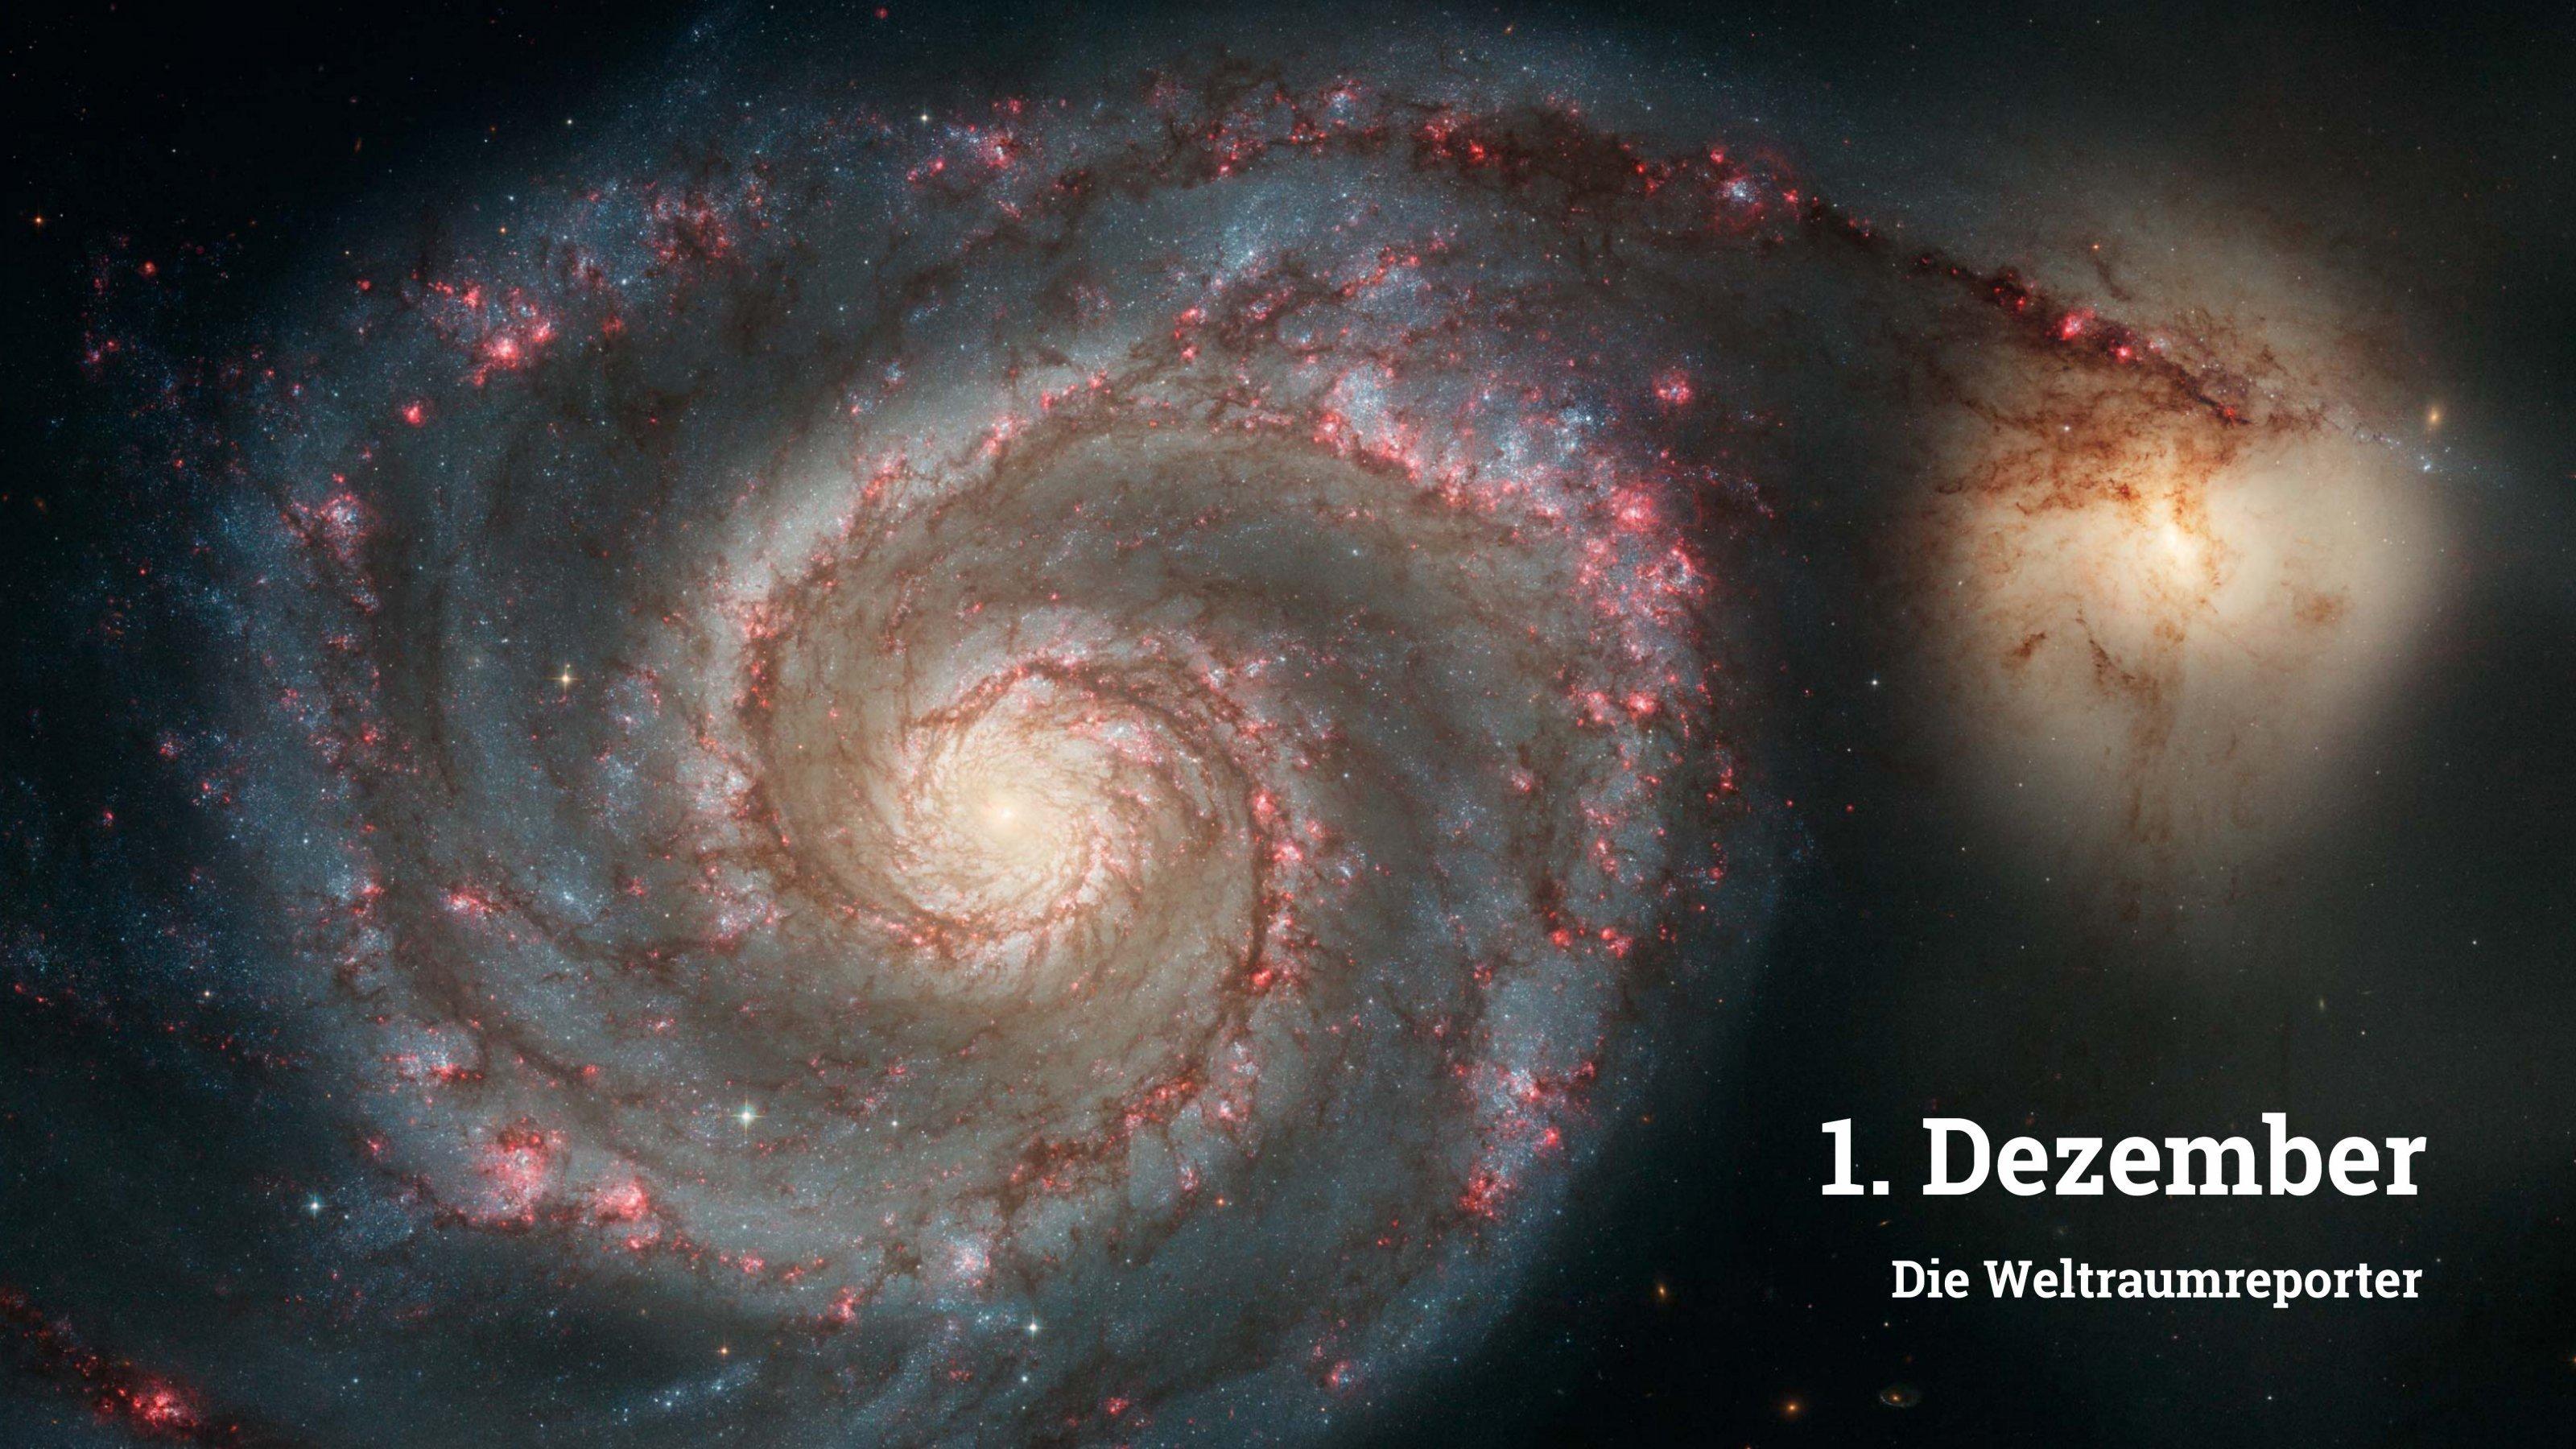 Das Bild zeigt die Spiralgalaxie M51, auch Whirlpoolgalaxie genannt. Rechts oben im Bild schienbar an einen ausladenden Spiralarm anschließend, befindet sich die kleinere Galaxie NGC 5195.